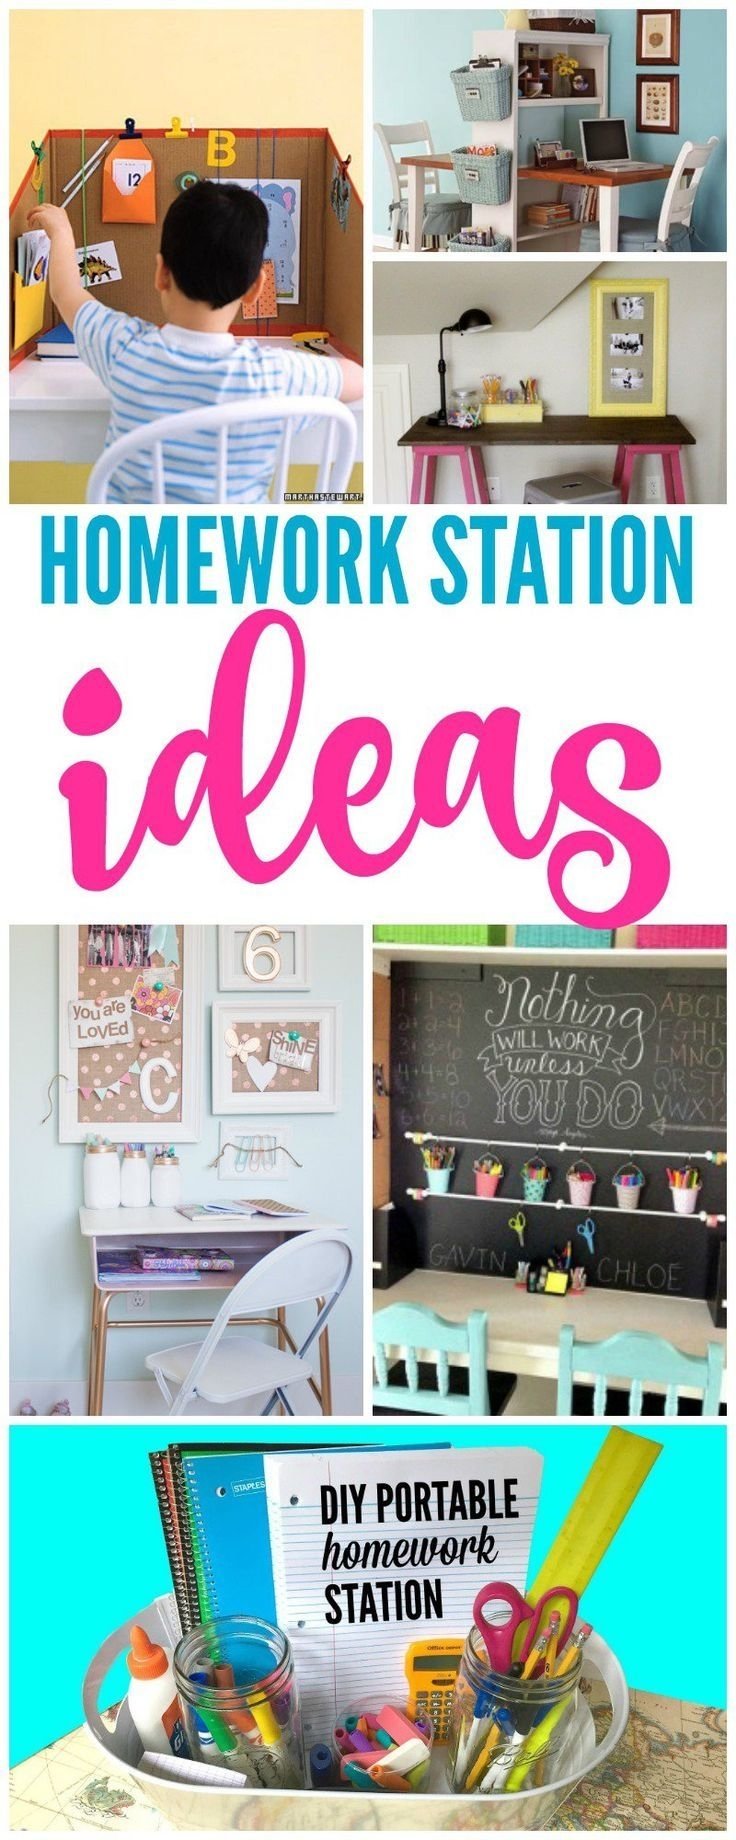 10 Cute Pinterest Back To School Ideas 317 best back to school ideas images on pinterest back to school 2022